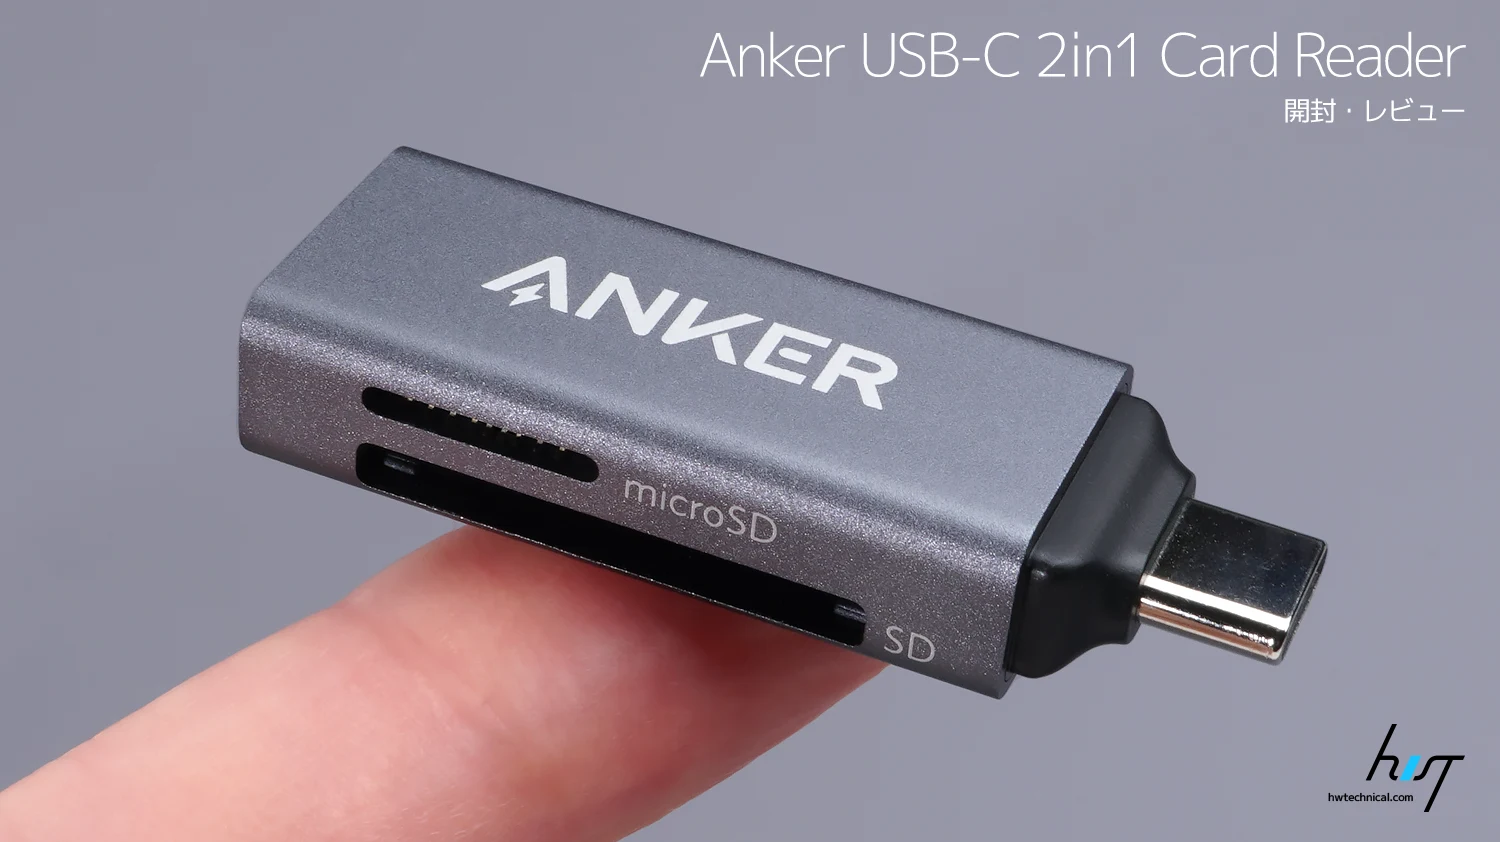 スマホでも使えるアルミボディのUSB3.0小型SDカードリーダー「Anker USB-C 2in1 Card Reader」